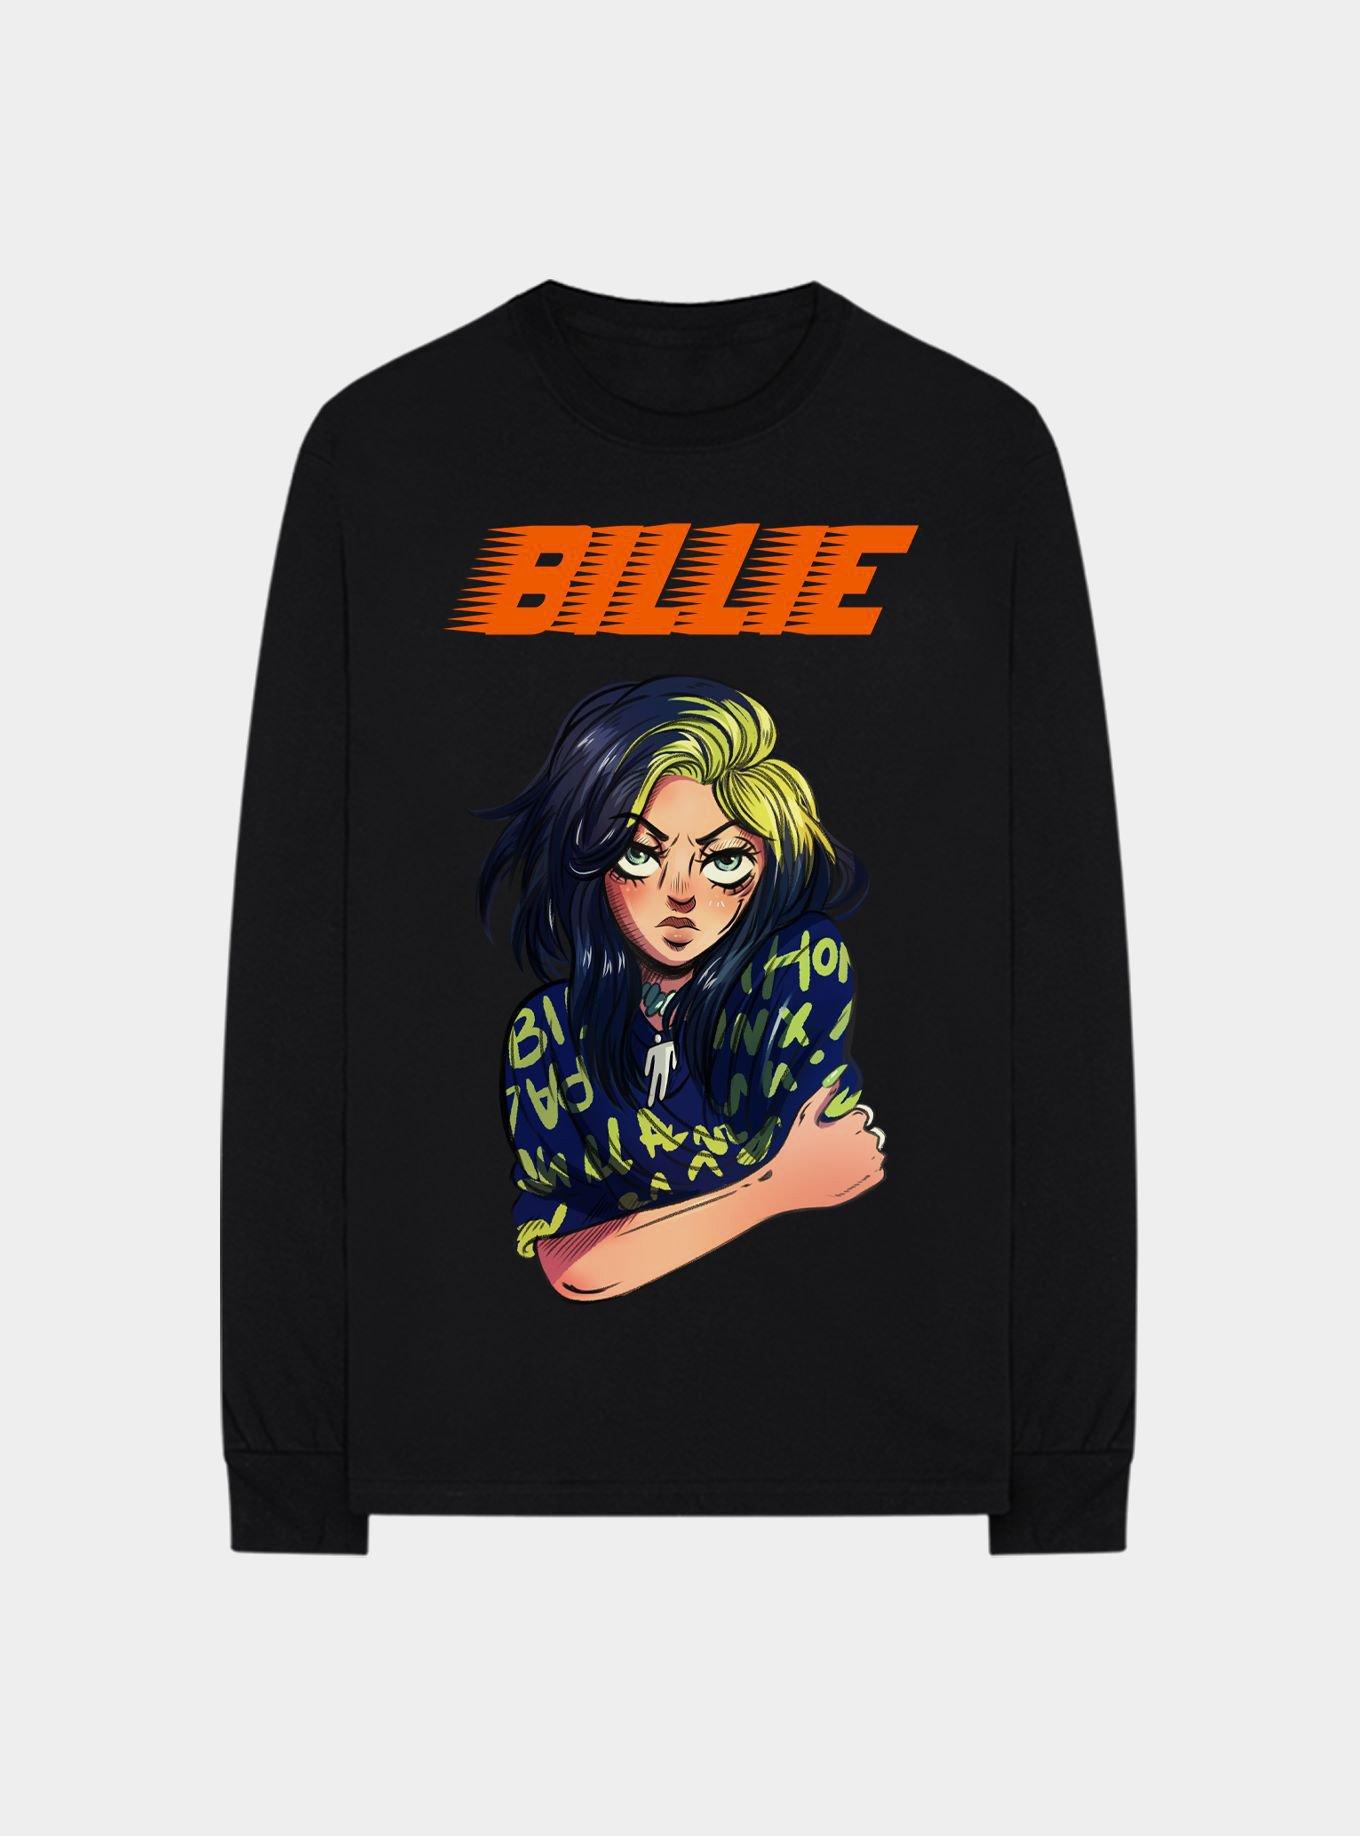 Billie Eilish Anime Girls Sweatshirt | Hot Topic